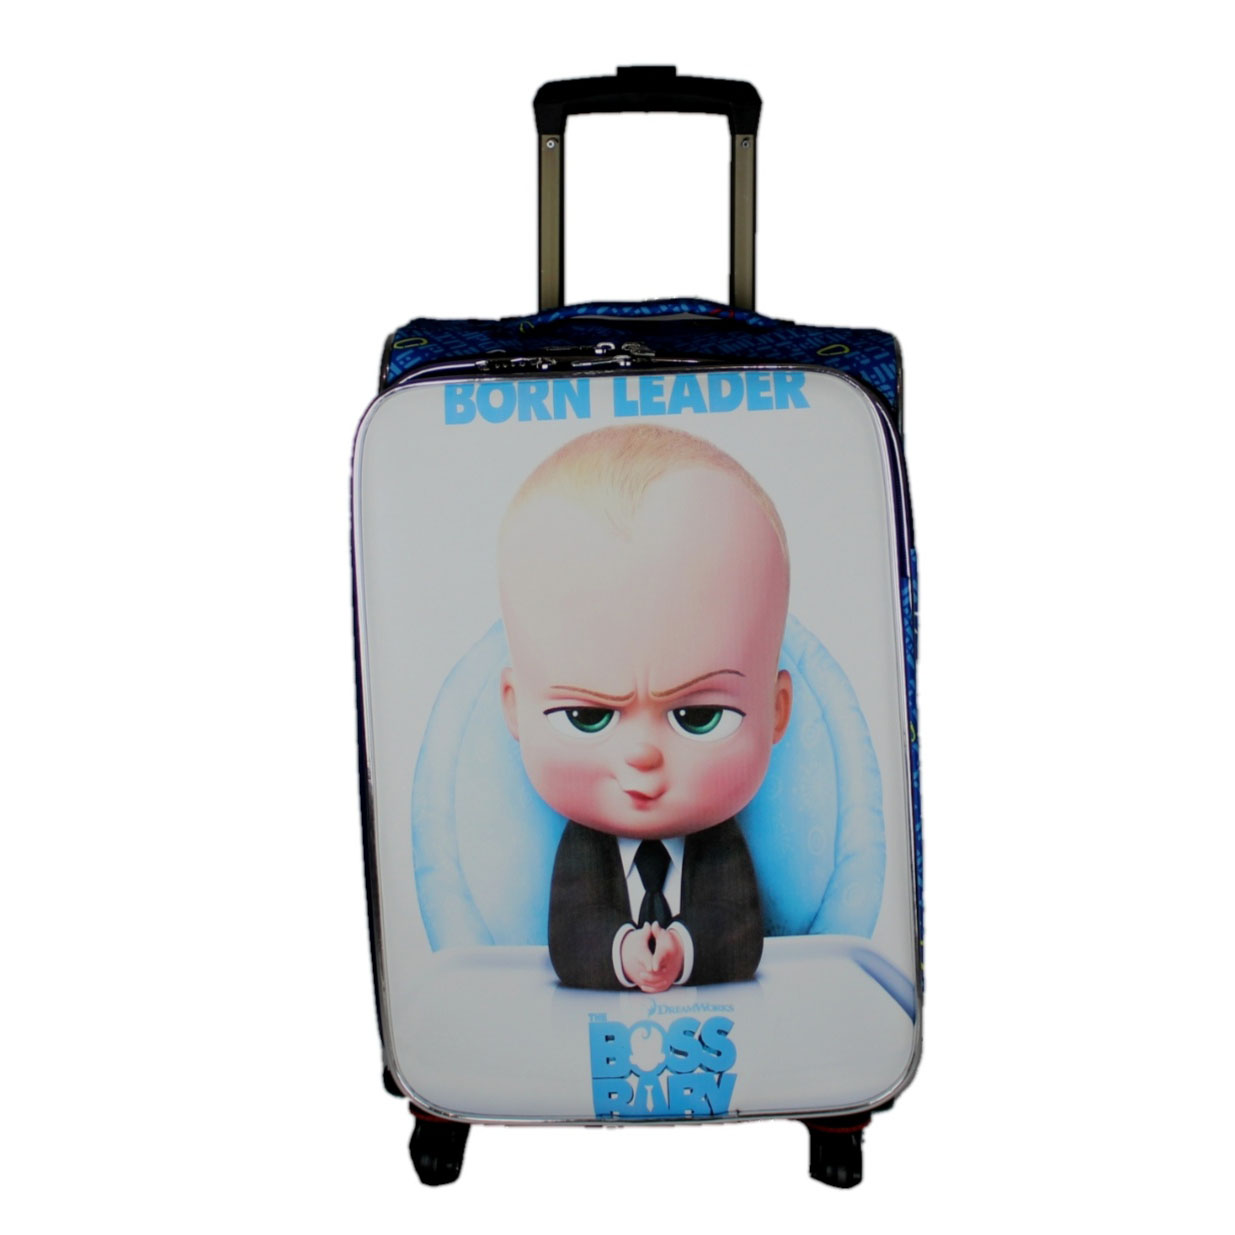 چمدان کودک  طرح بچه رئيس کد854455